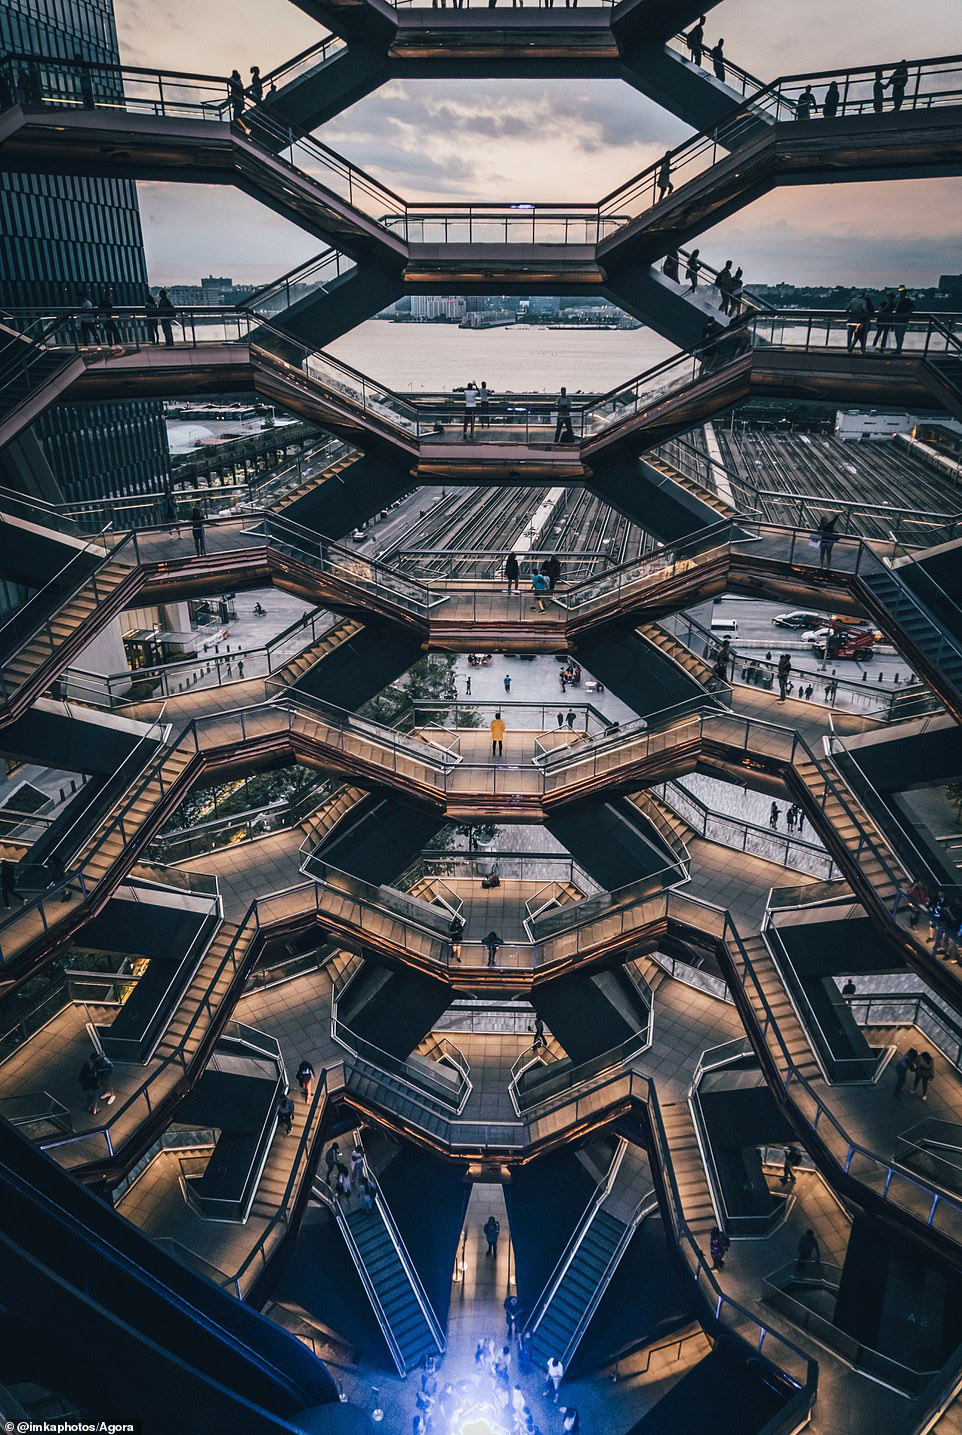  Tòa nhà Vessel cao 45m tại thành phố Hudson Yards của New York (Mỹ) được ví như “siêu kiến trúc” vì tính phức tạp, đánh lừa thị giác và bắt mắt của nó. Bức ảnh tuyệt vời này được nhiếp ảnh gia người Đức 'Katharina I' ghi lại.